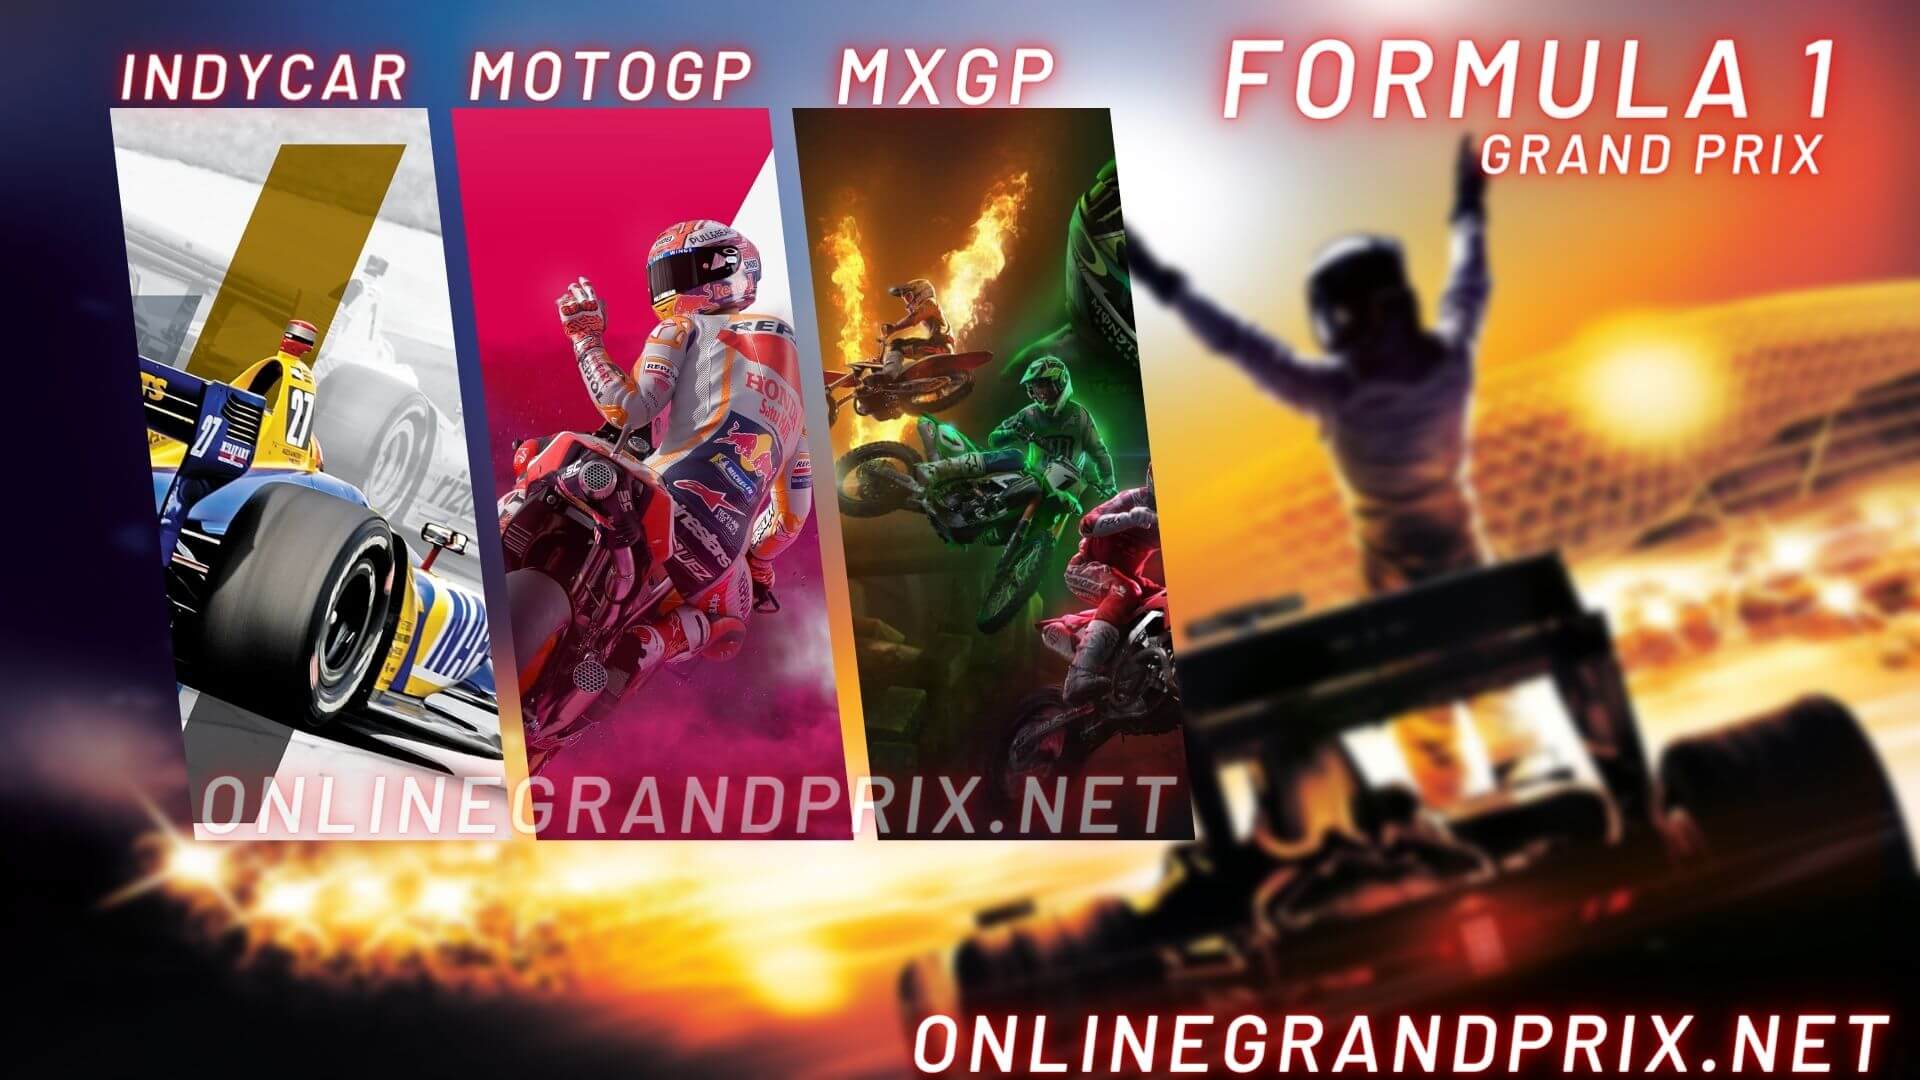 Grand Prix Schedule